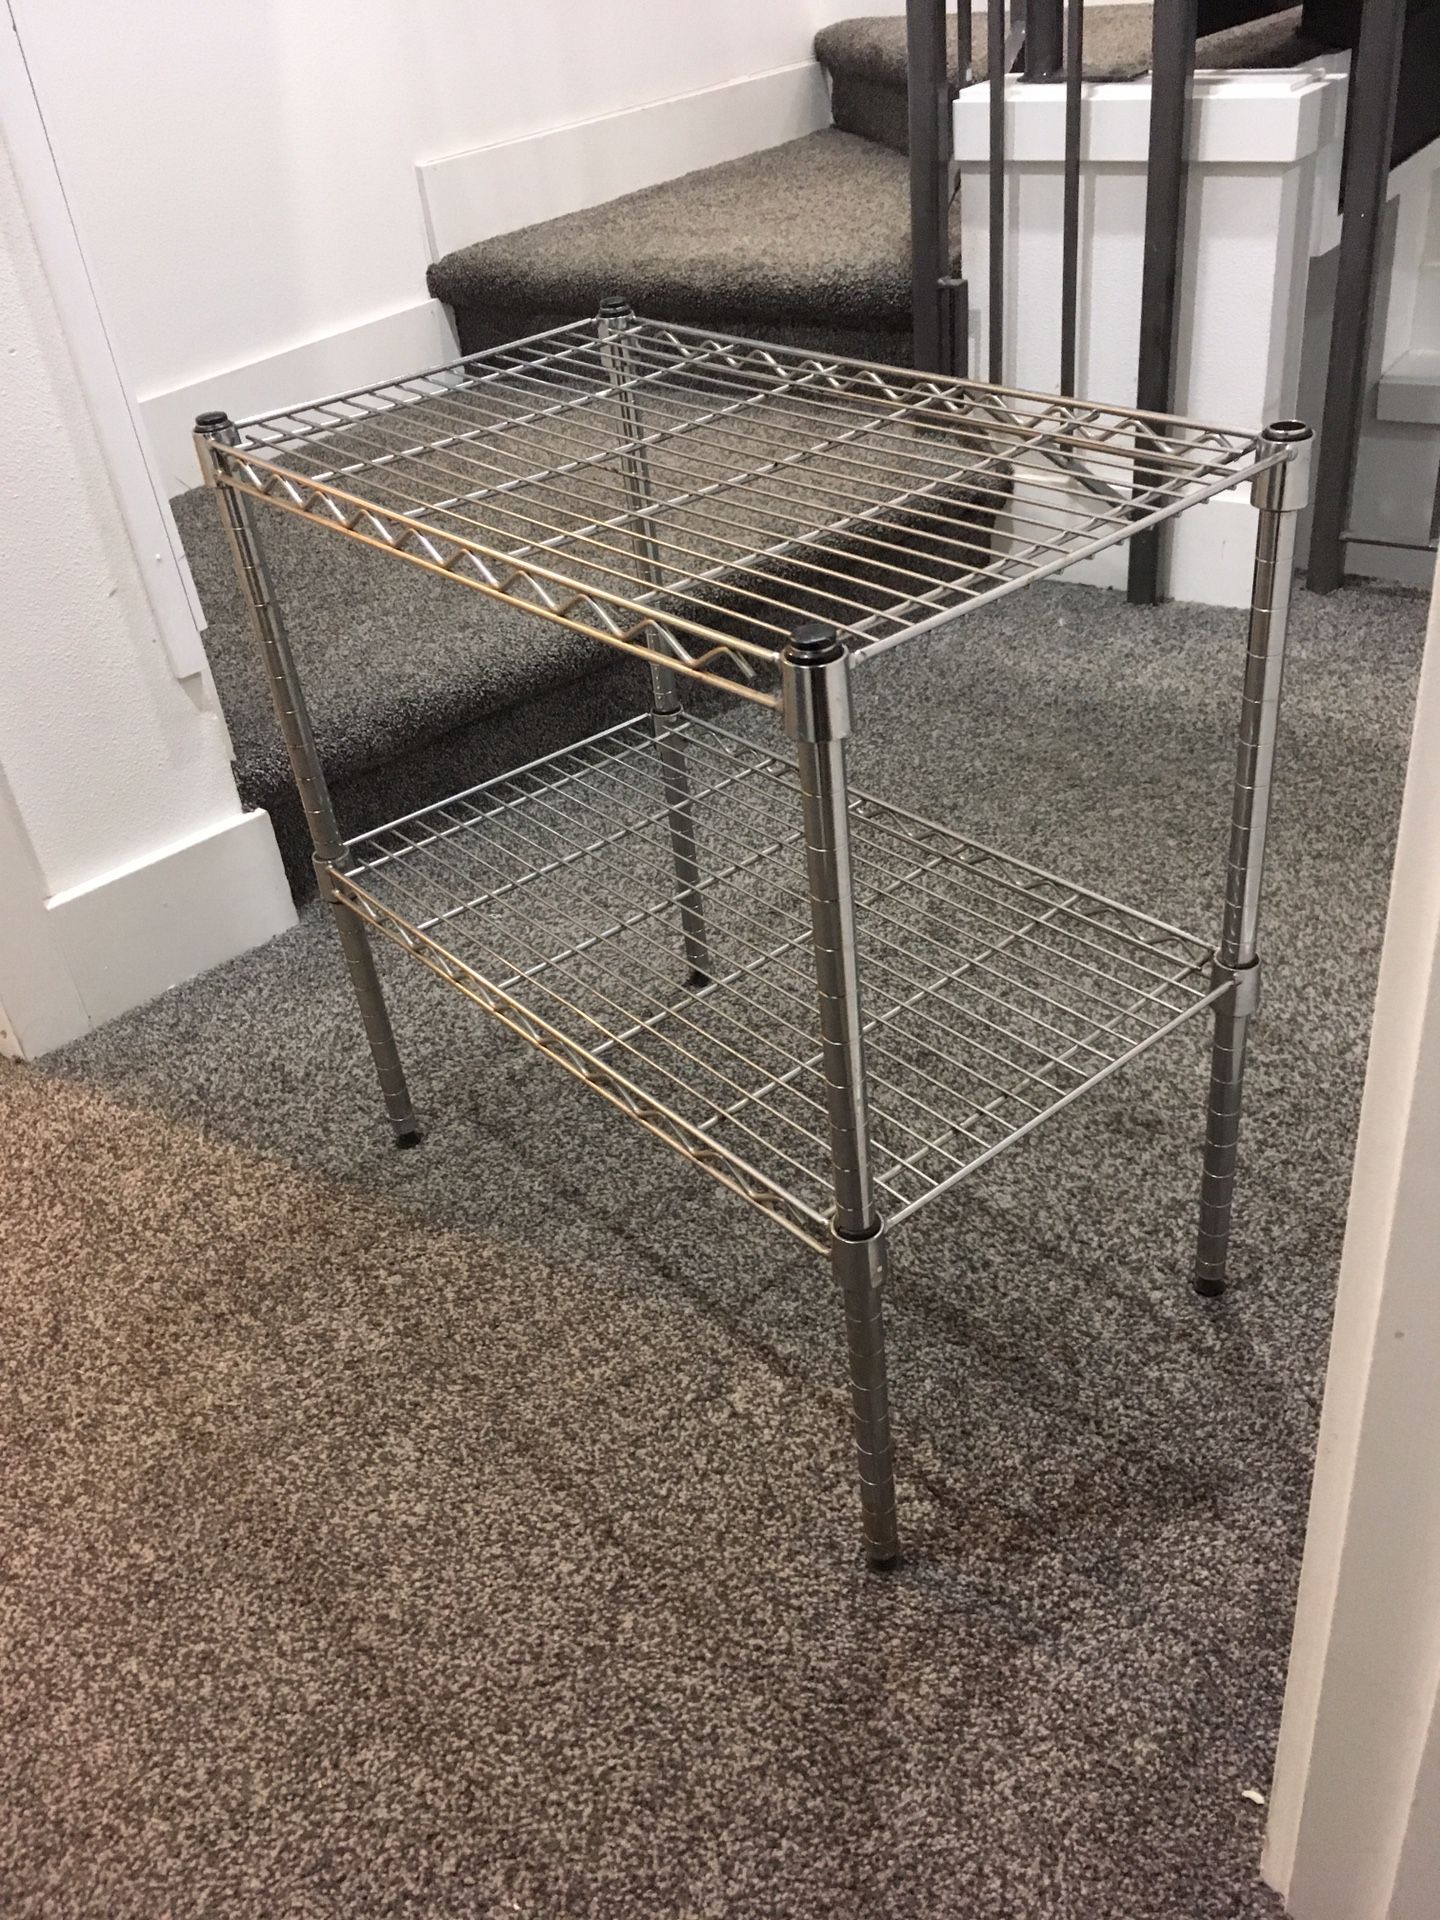 2 tier metal rack